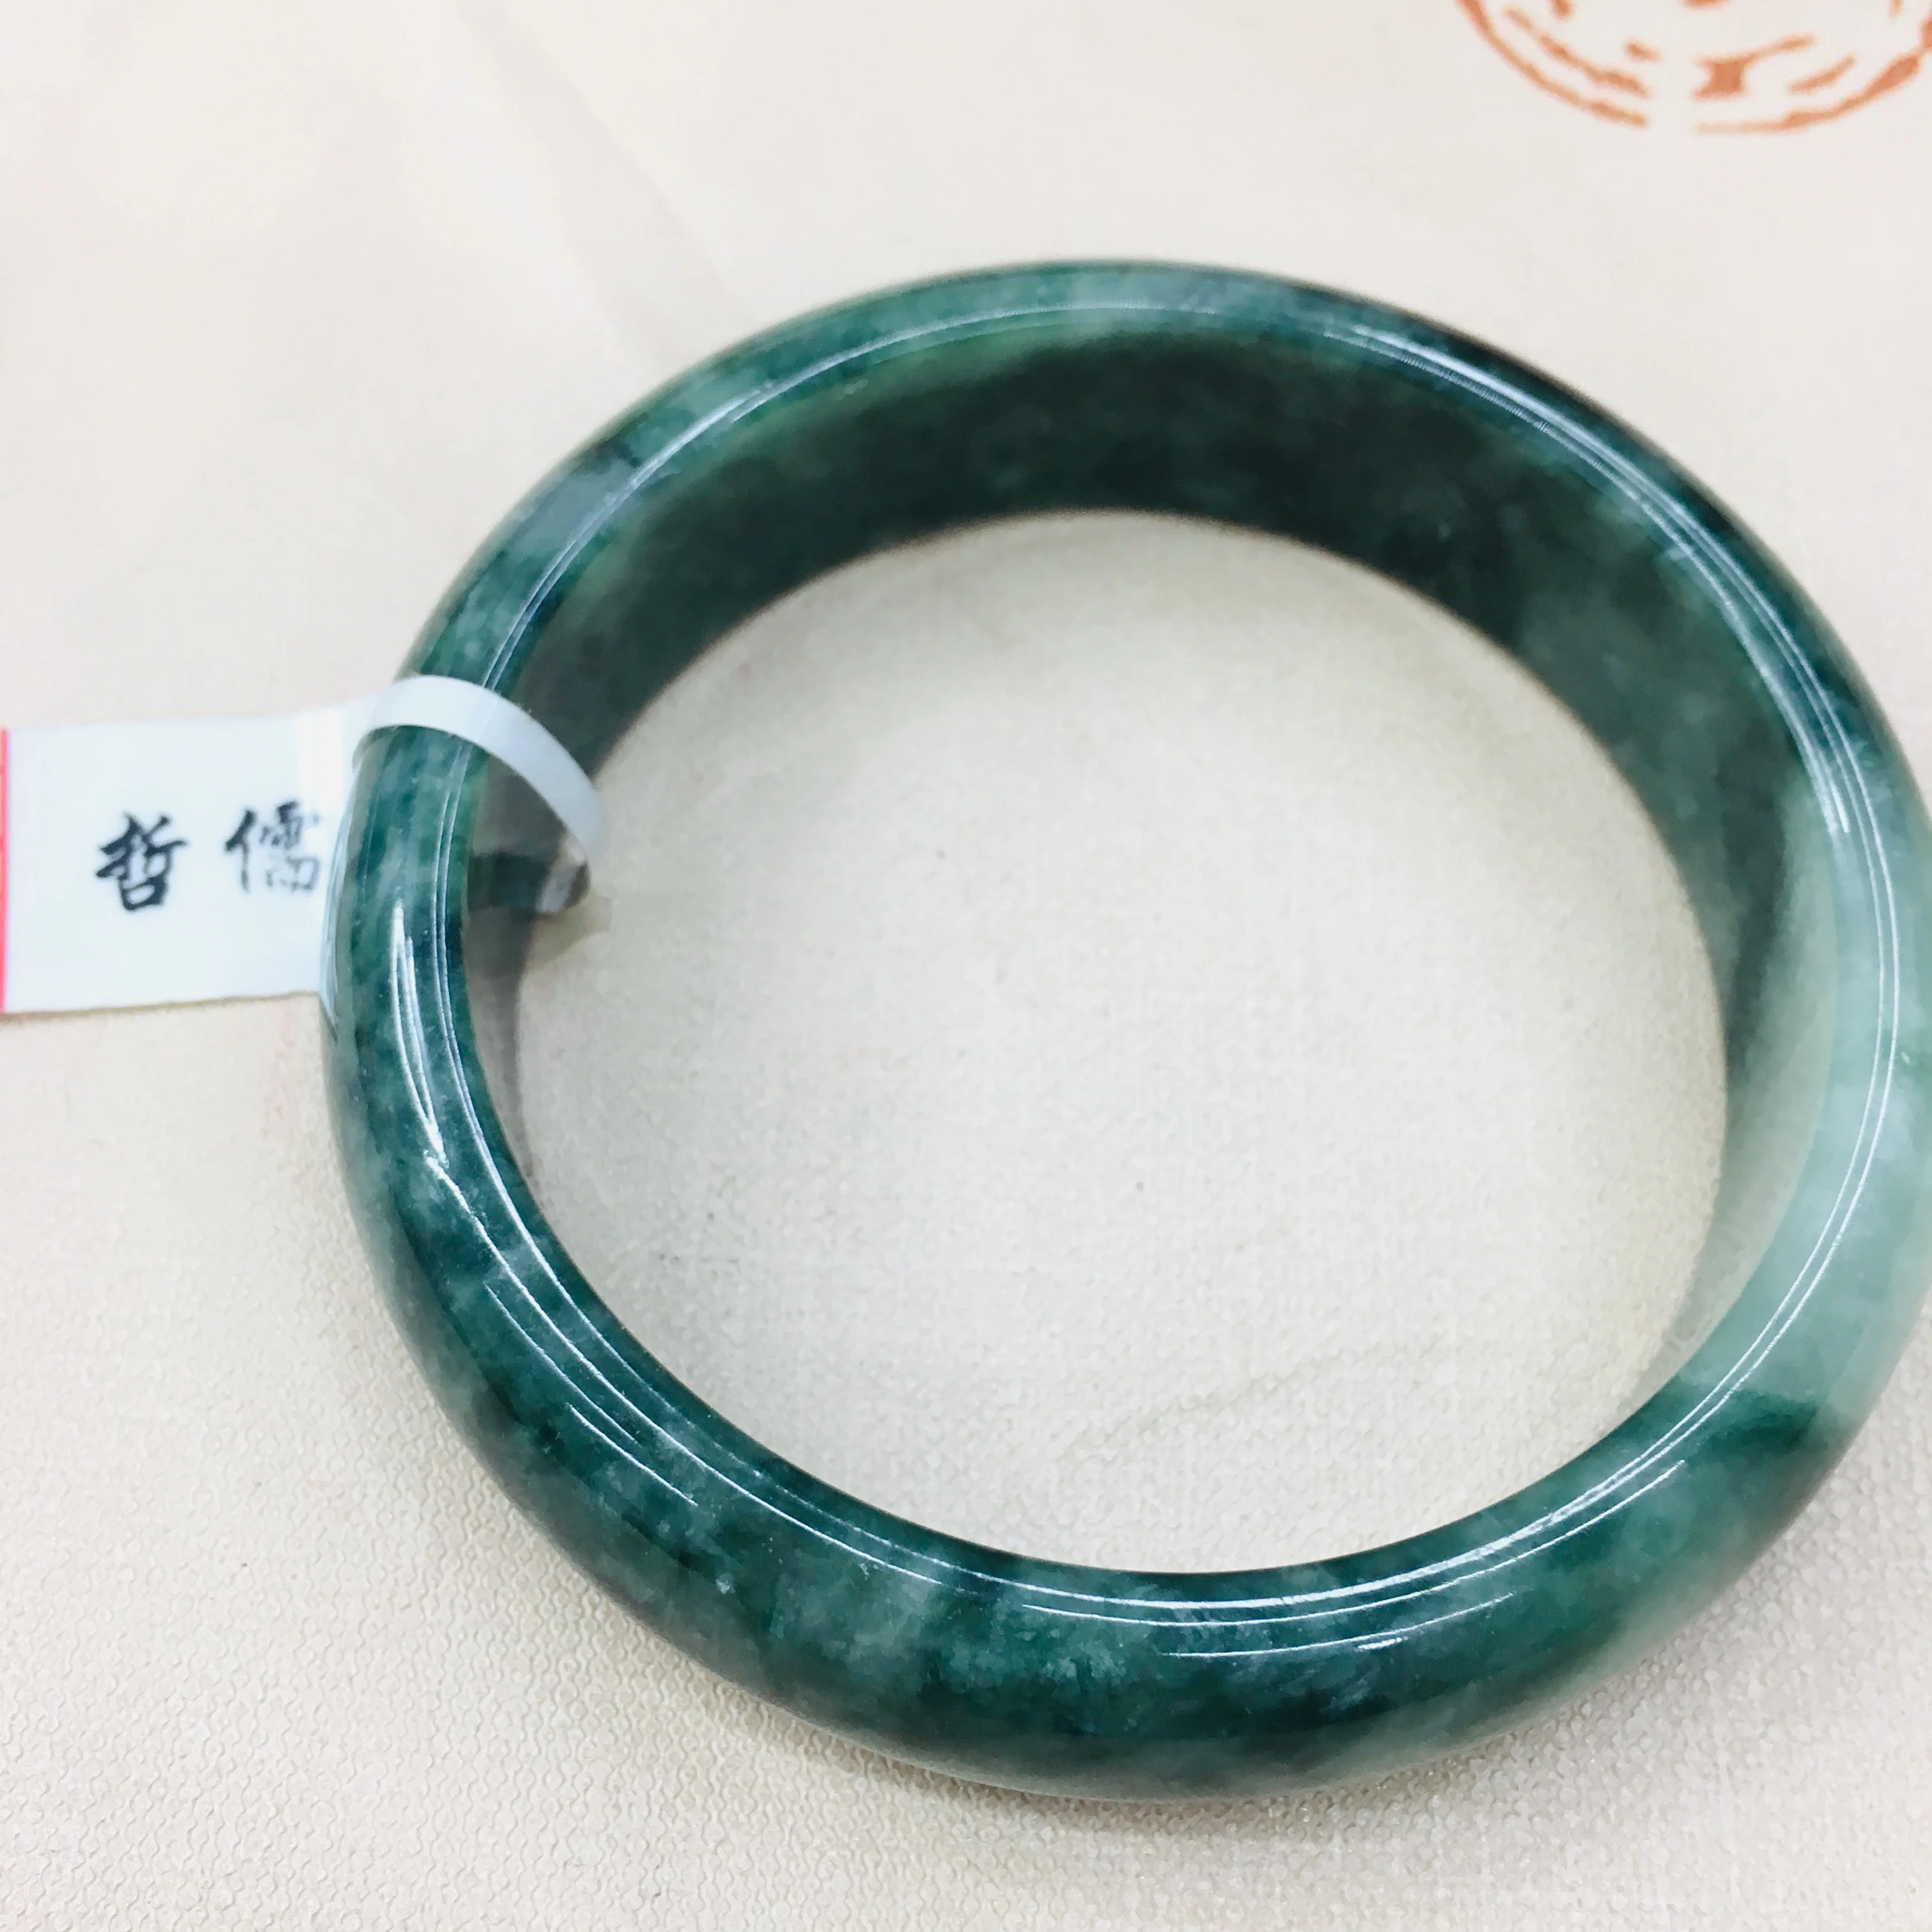 Zhe Ru Jóia Natural Puro Jadeite Pulseira Natural Elegante Azul Escuro Bicolor 54-62mm Feminino Bracelete de Jade Enviar Um Certificado 0